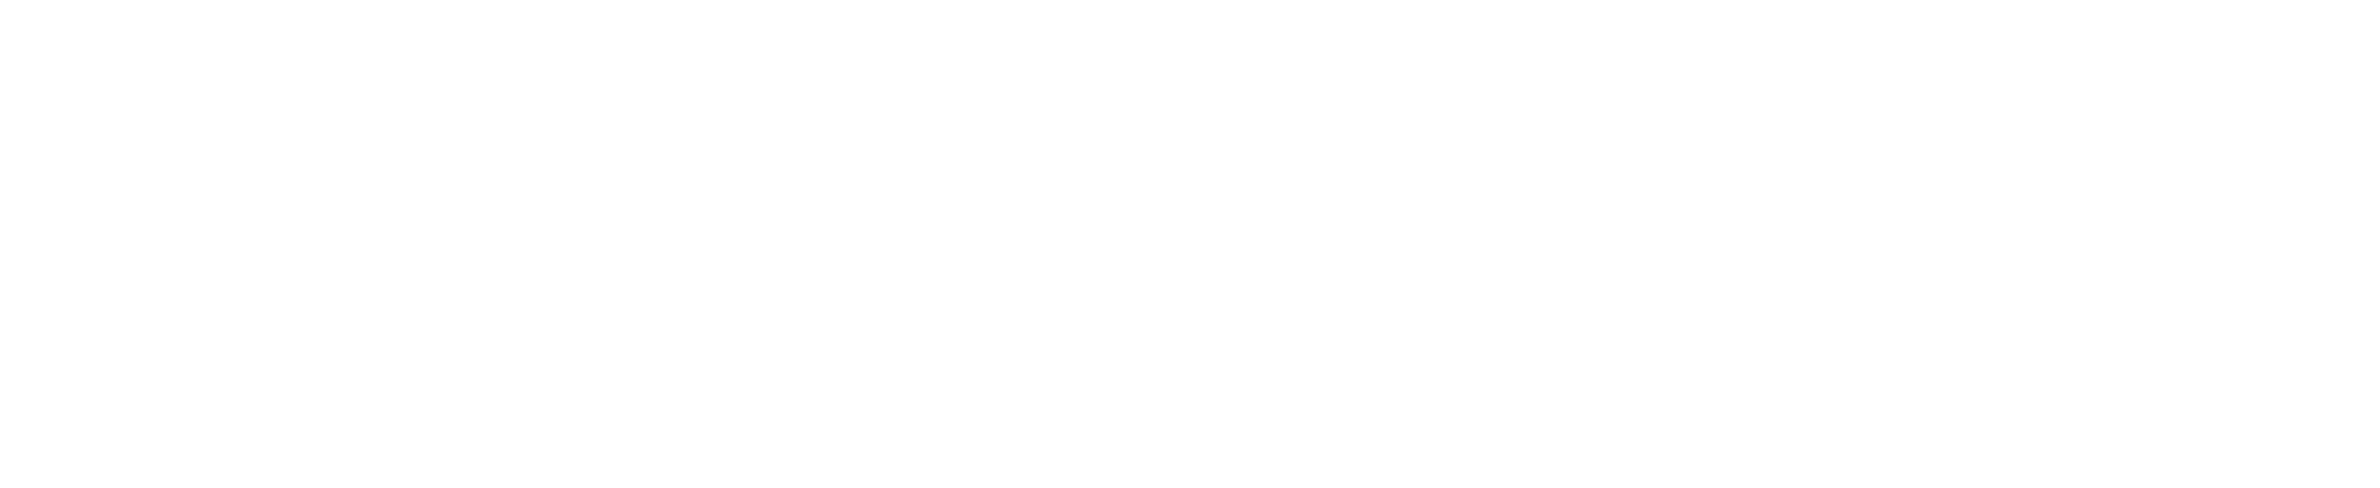 Disney Interactive Logo - disney-interactive-logo – Mode Effect